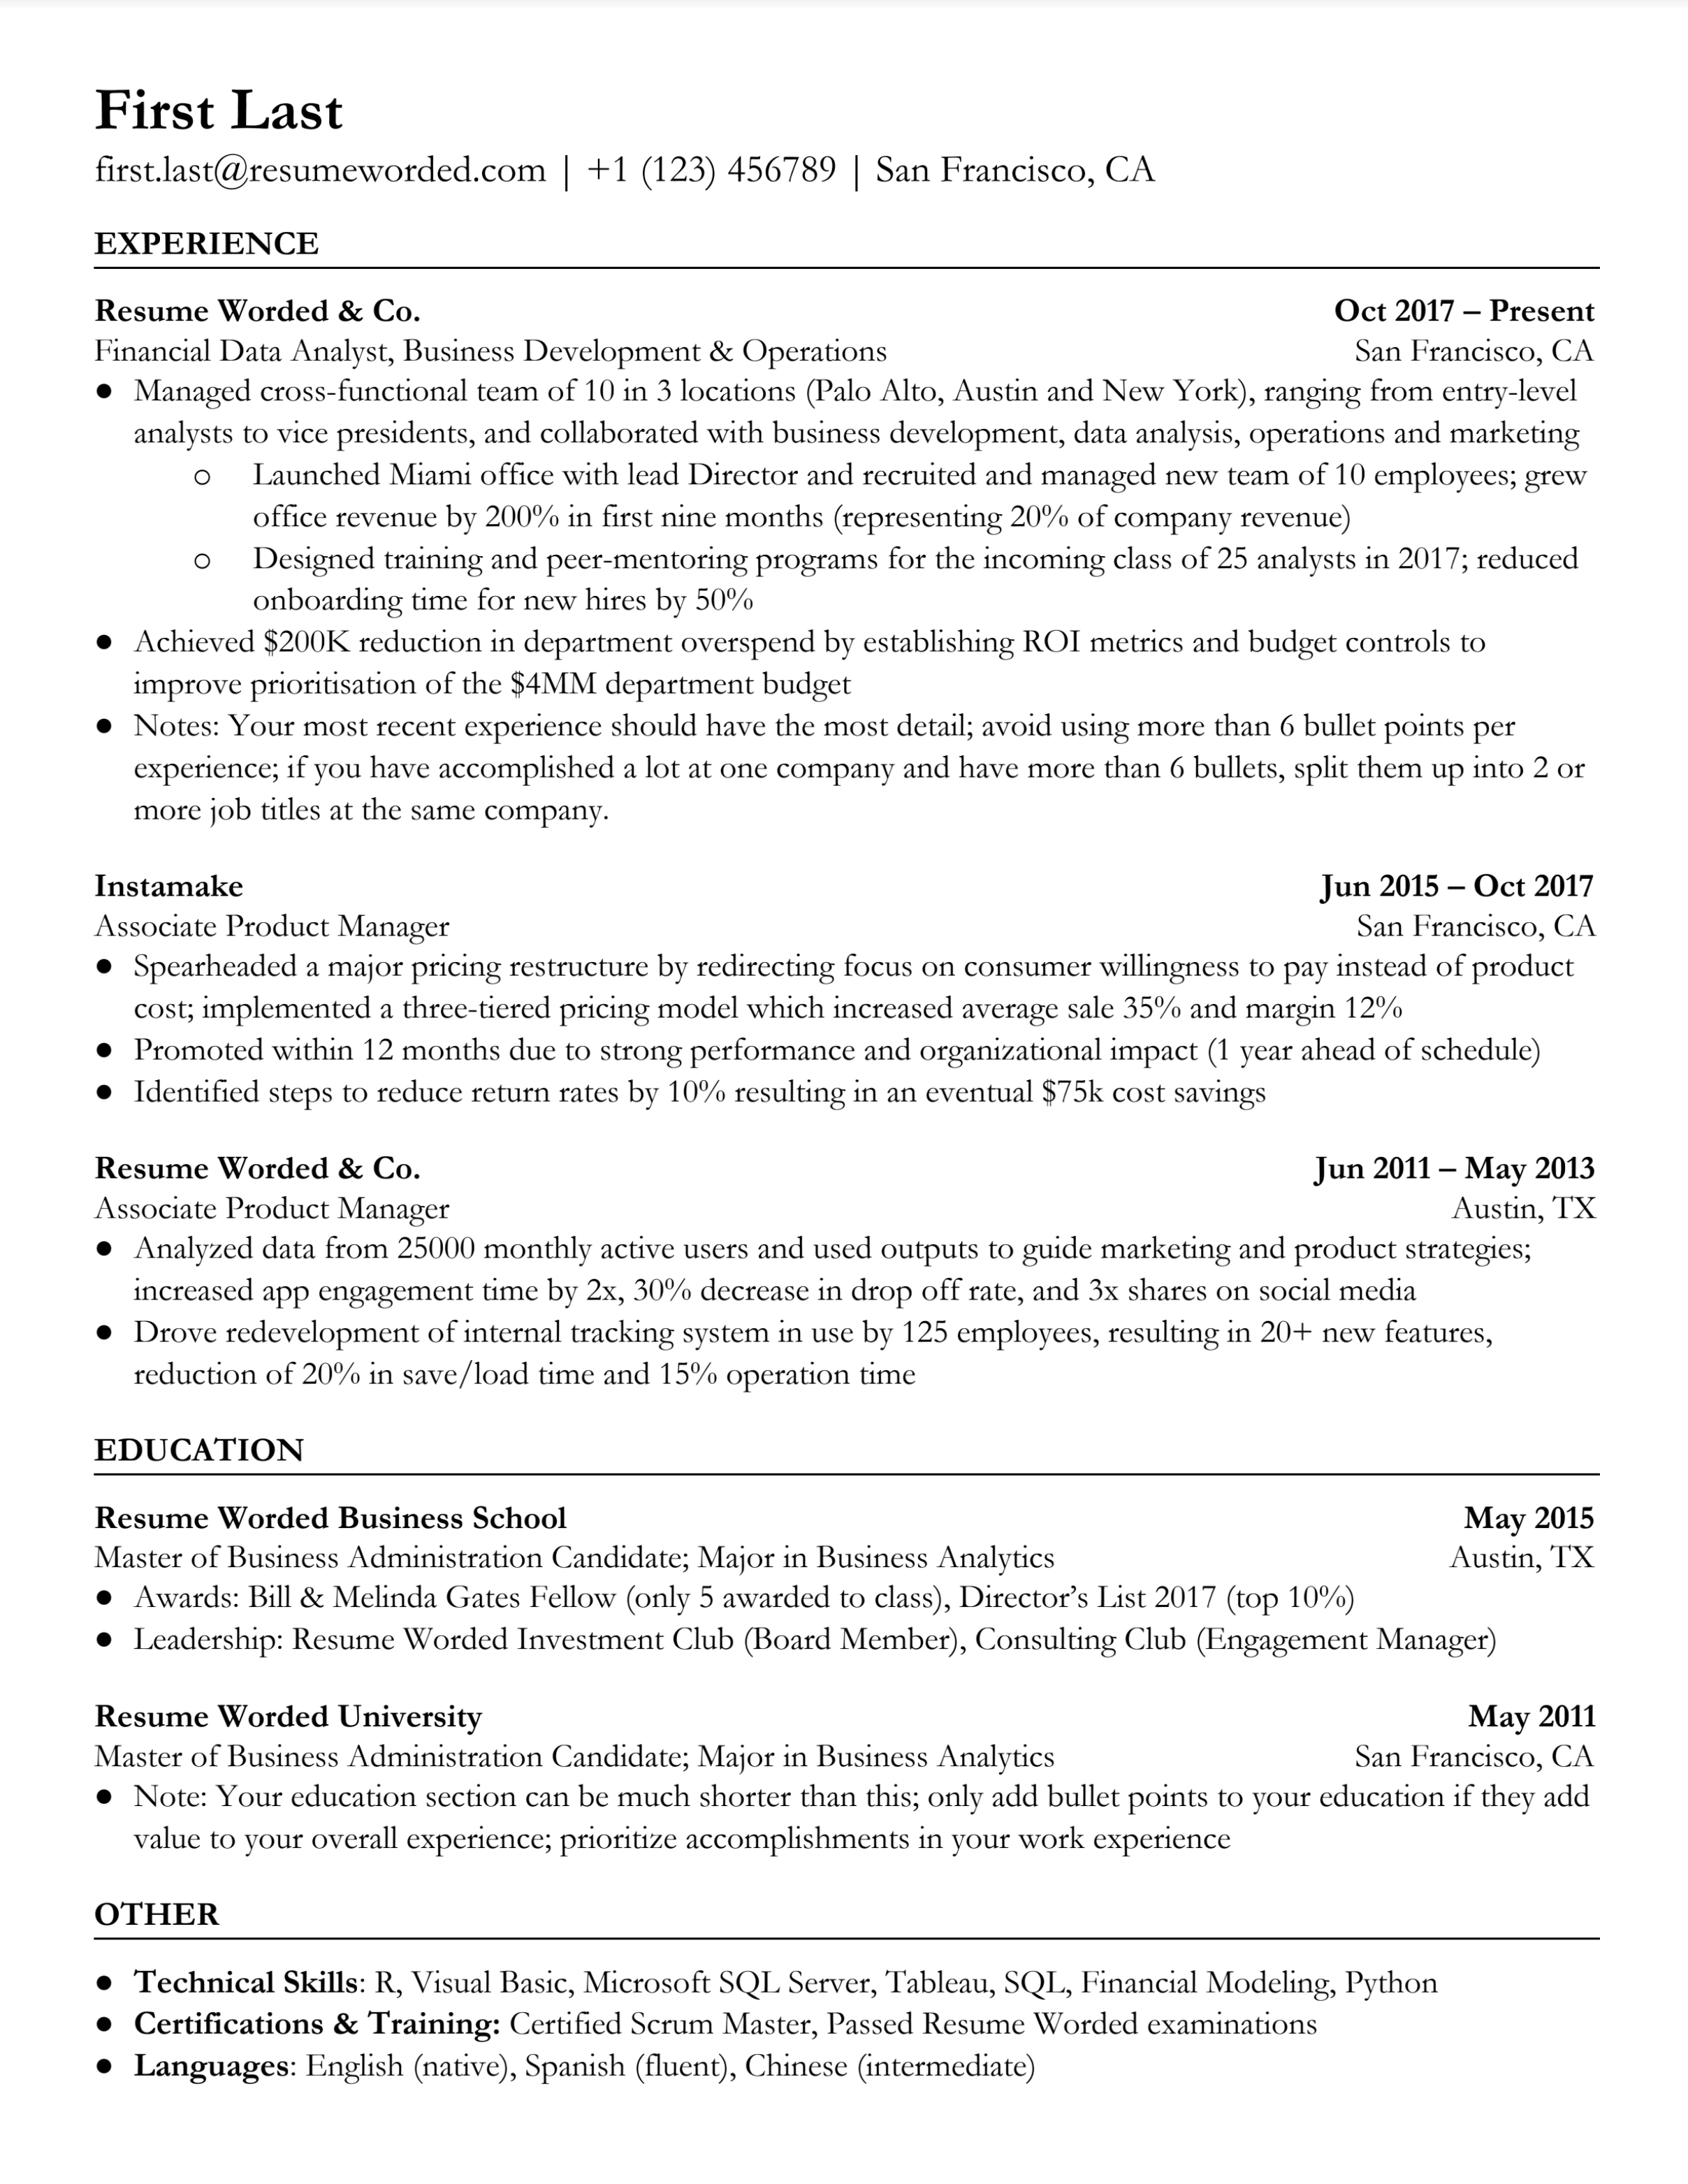 ATS optimised resume